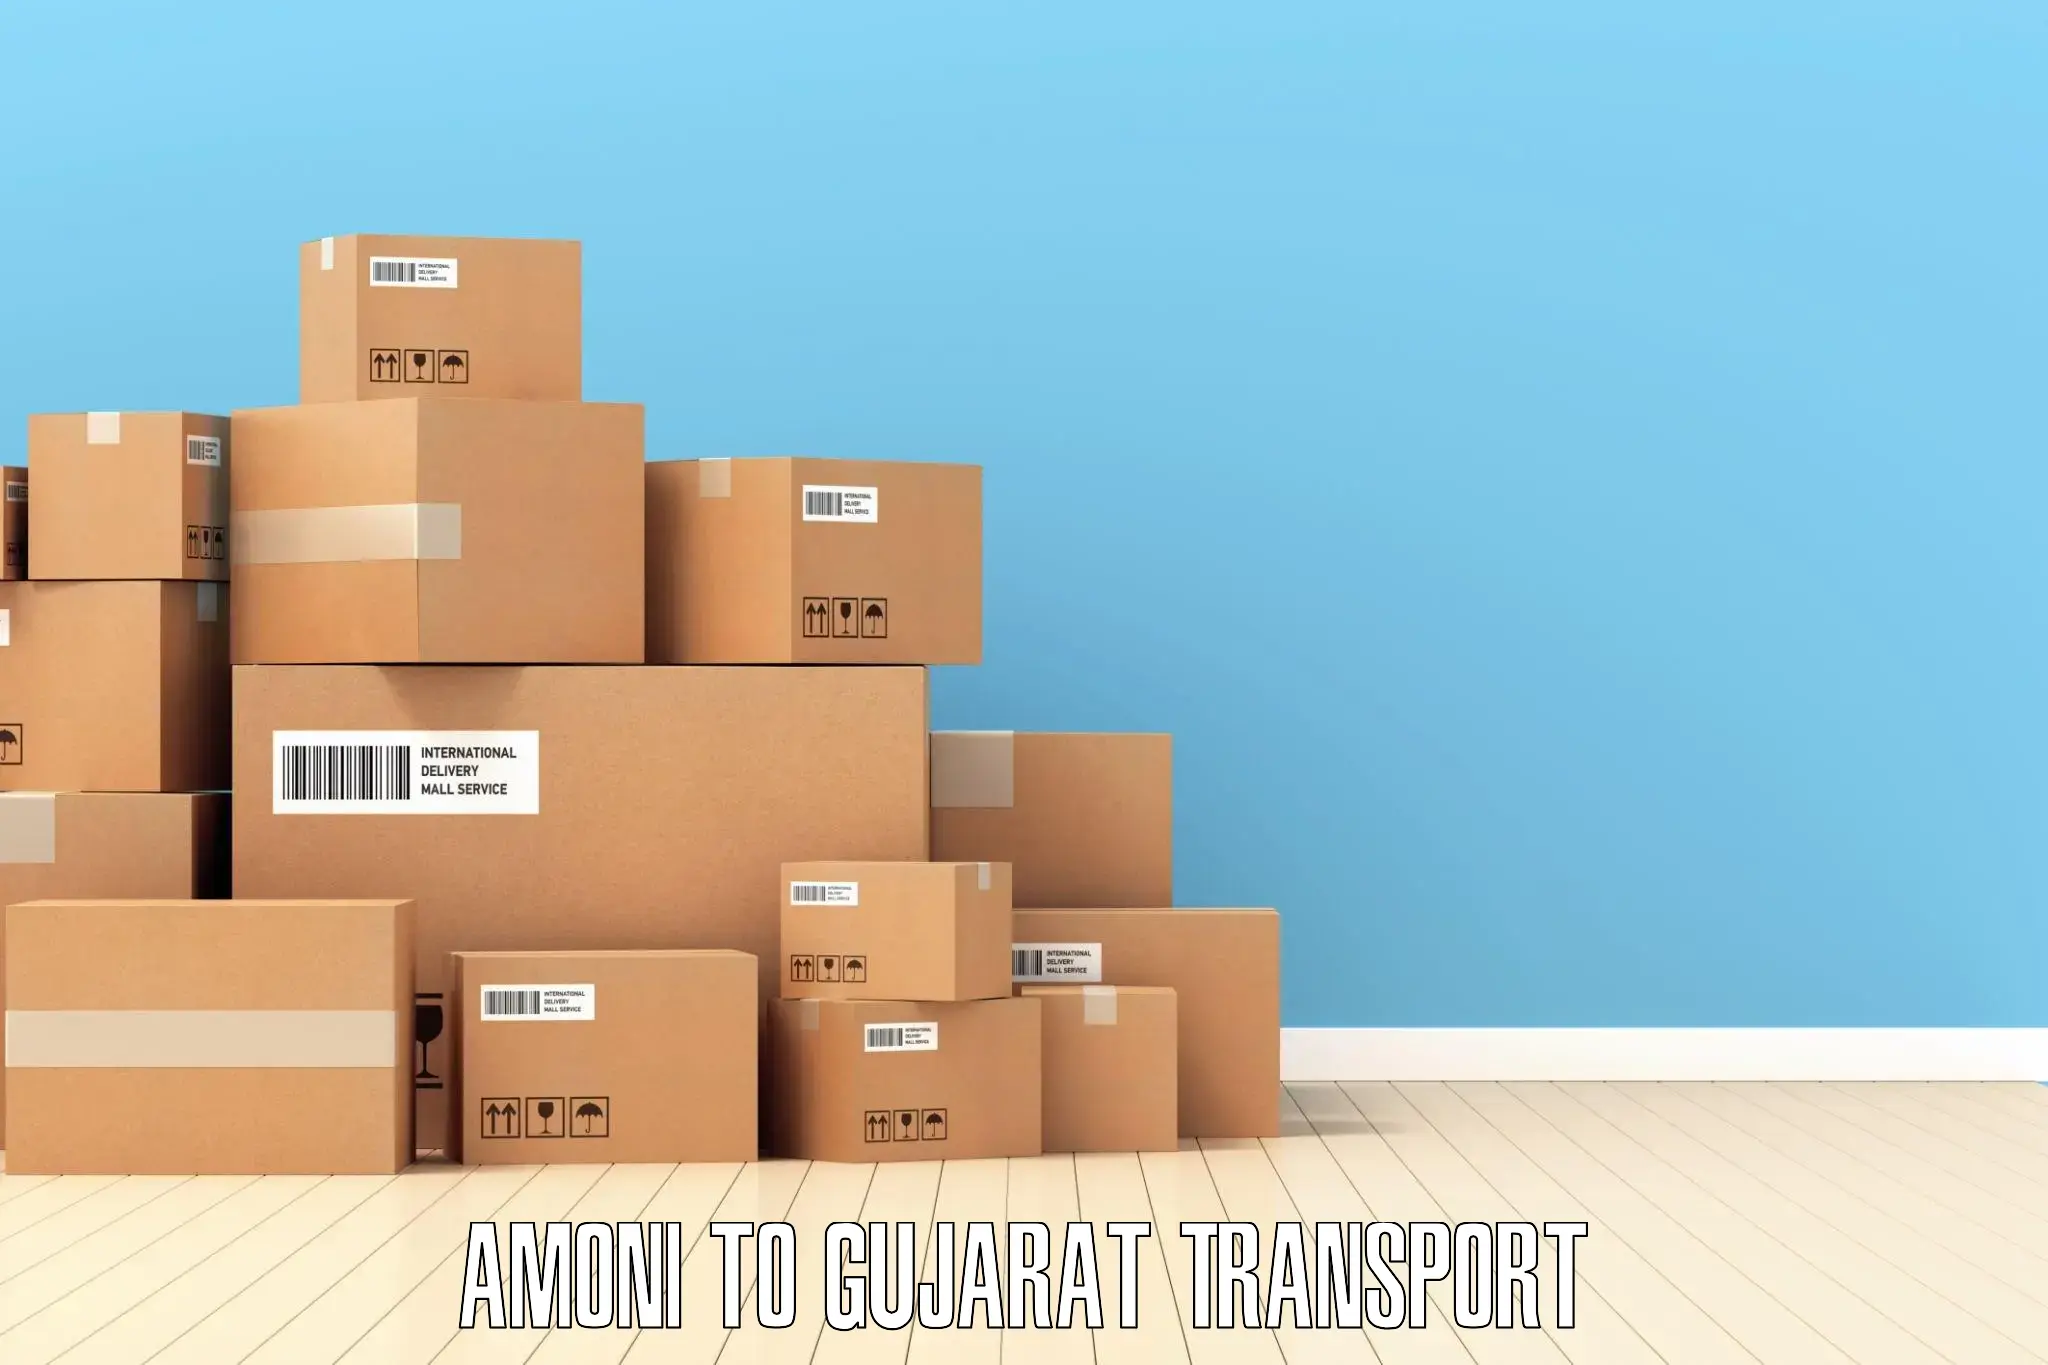 Transport services Amoni to IIIT Surat